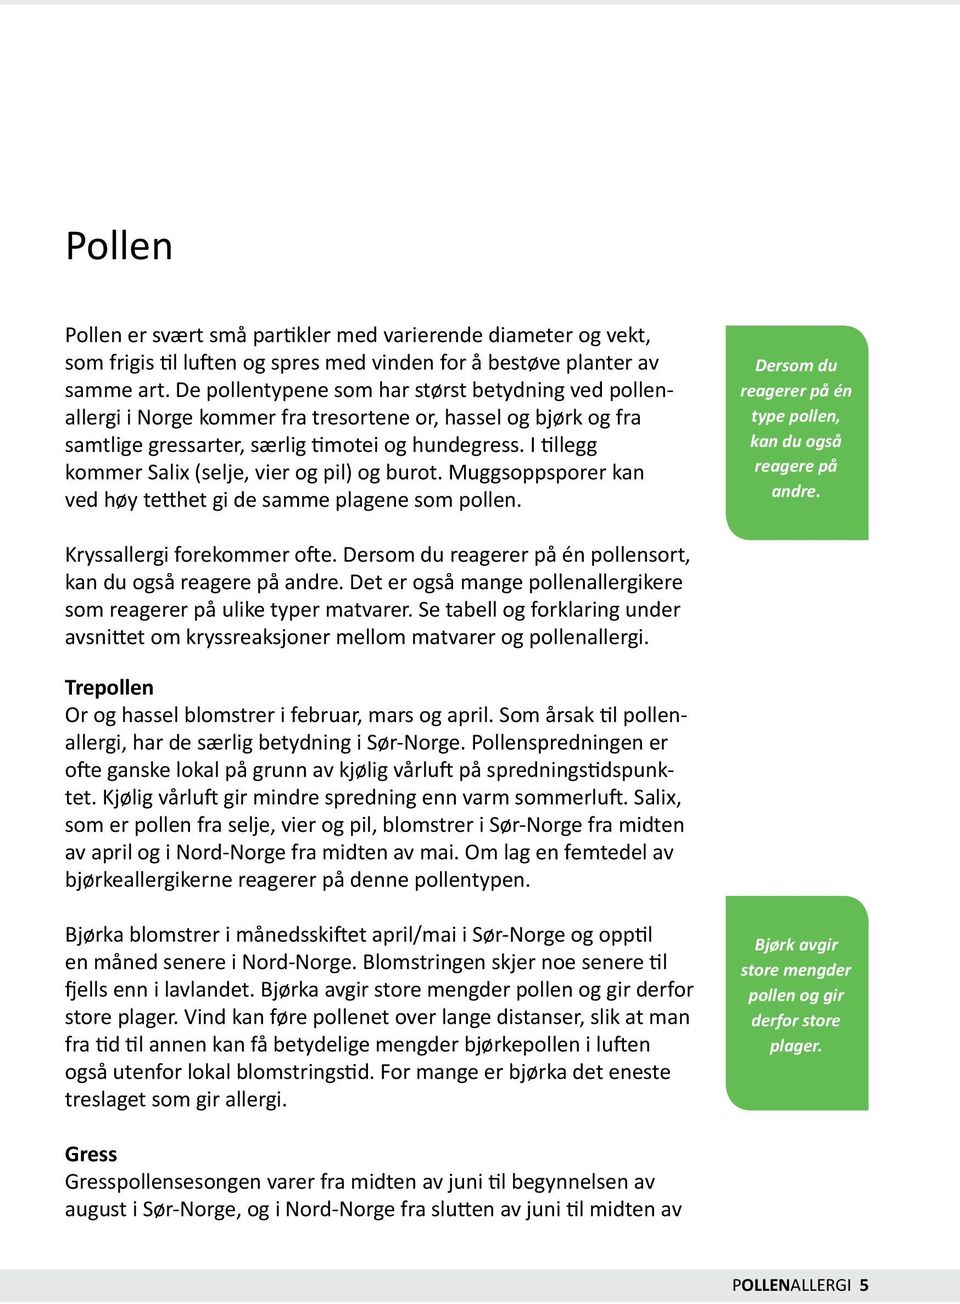 I tillegg kommer Salix (selje, vier og pil) og burot. Muggsoppsporer kan ved høy tetthet gi de samme plagene som pollen. Dersom du reagerer på én type pollen, kan du også reagere på andre.